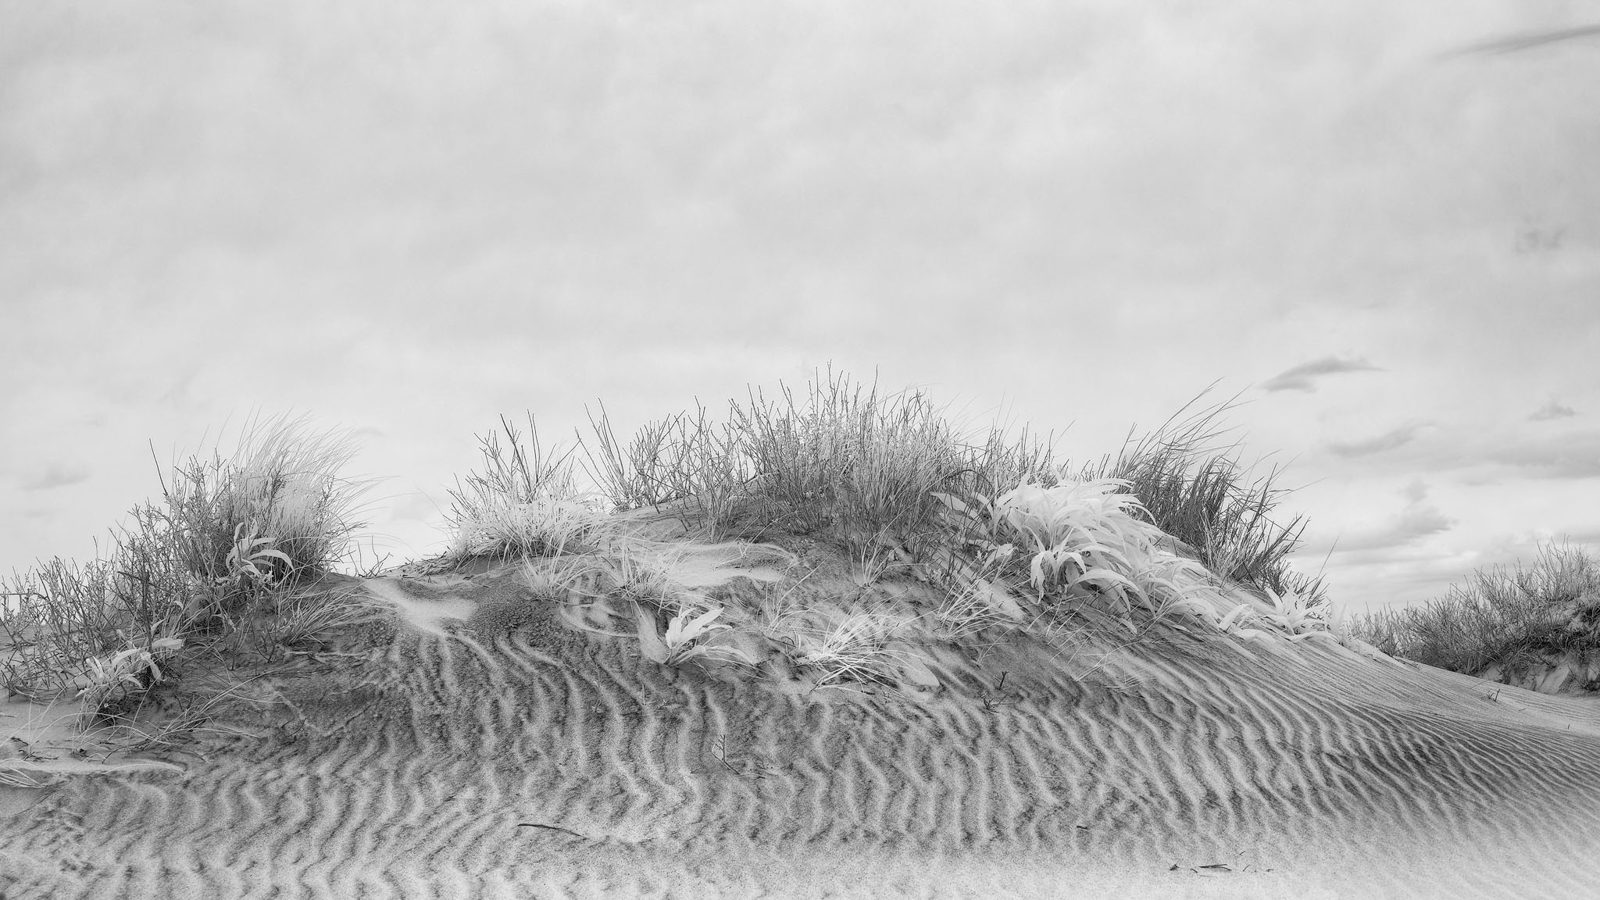 2021_05_Assateague-10012-CR3_DxO_DeepPRIME-Edit2048.jpg - Sand Dune in infrared.